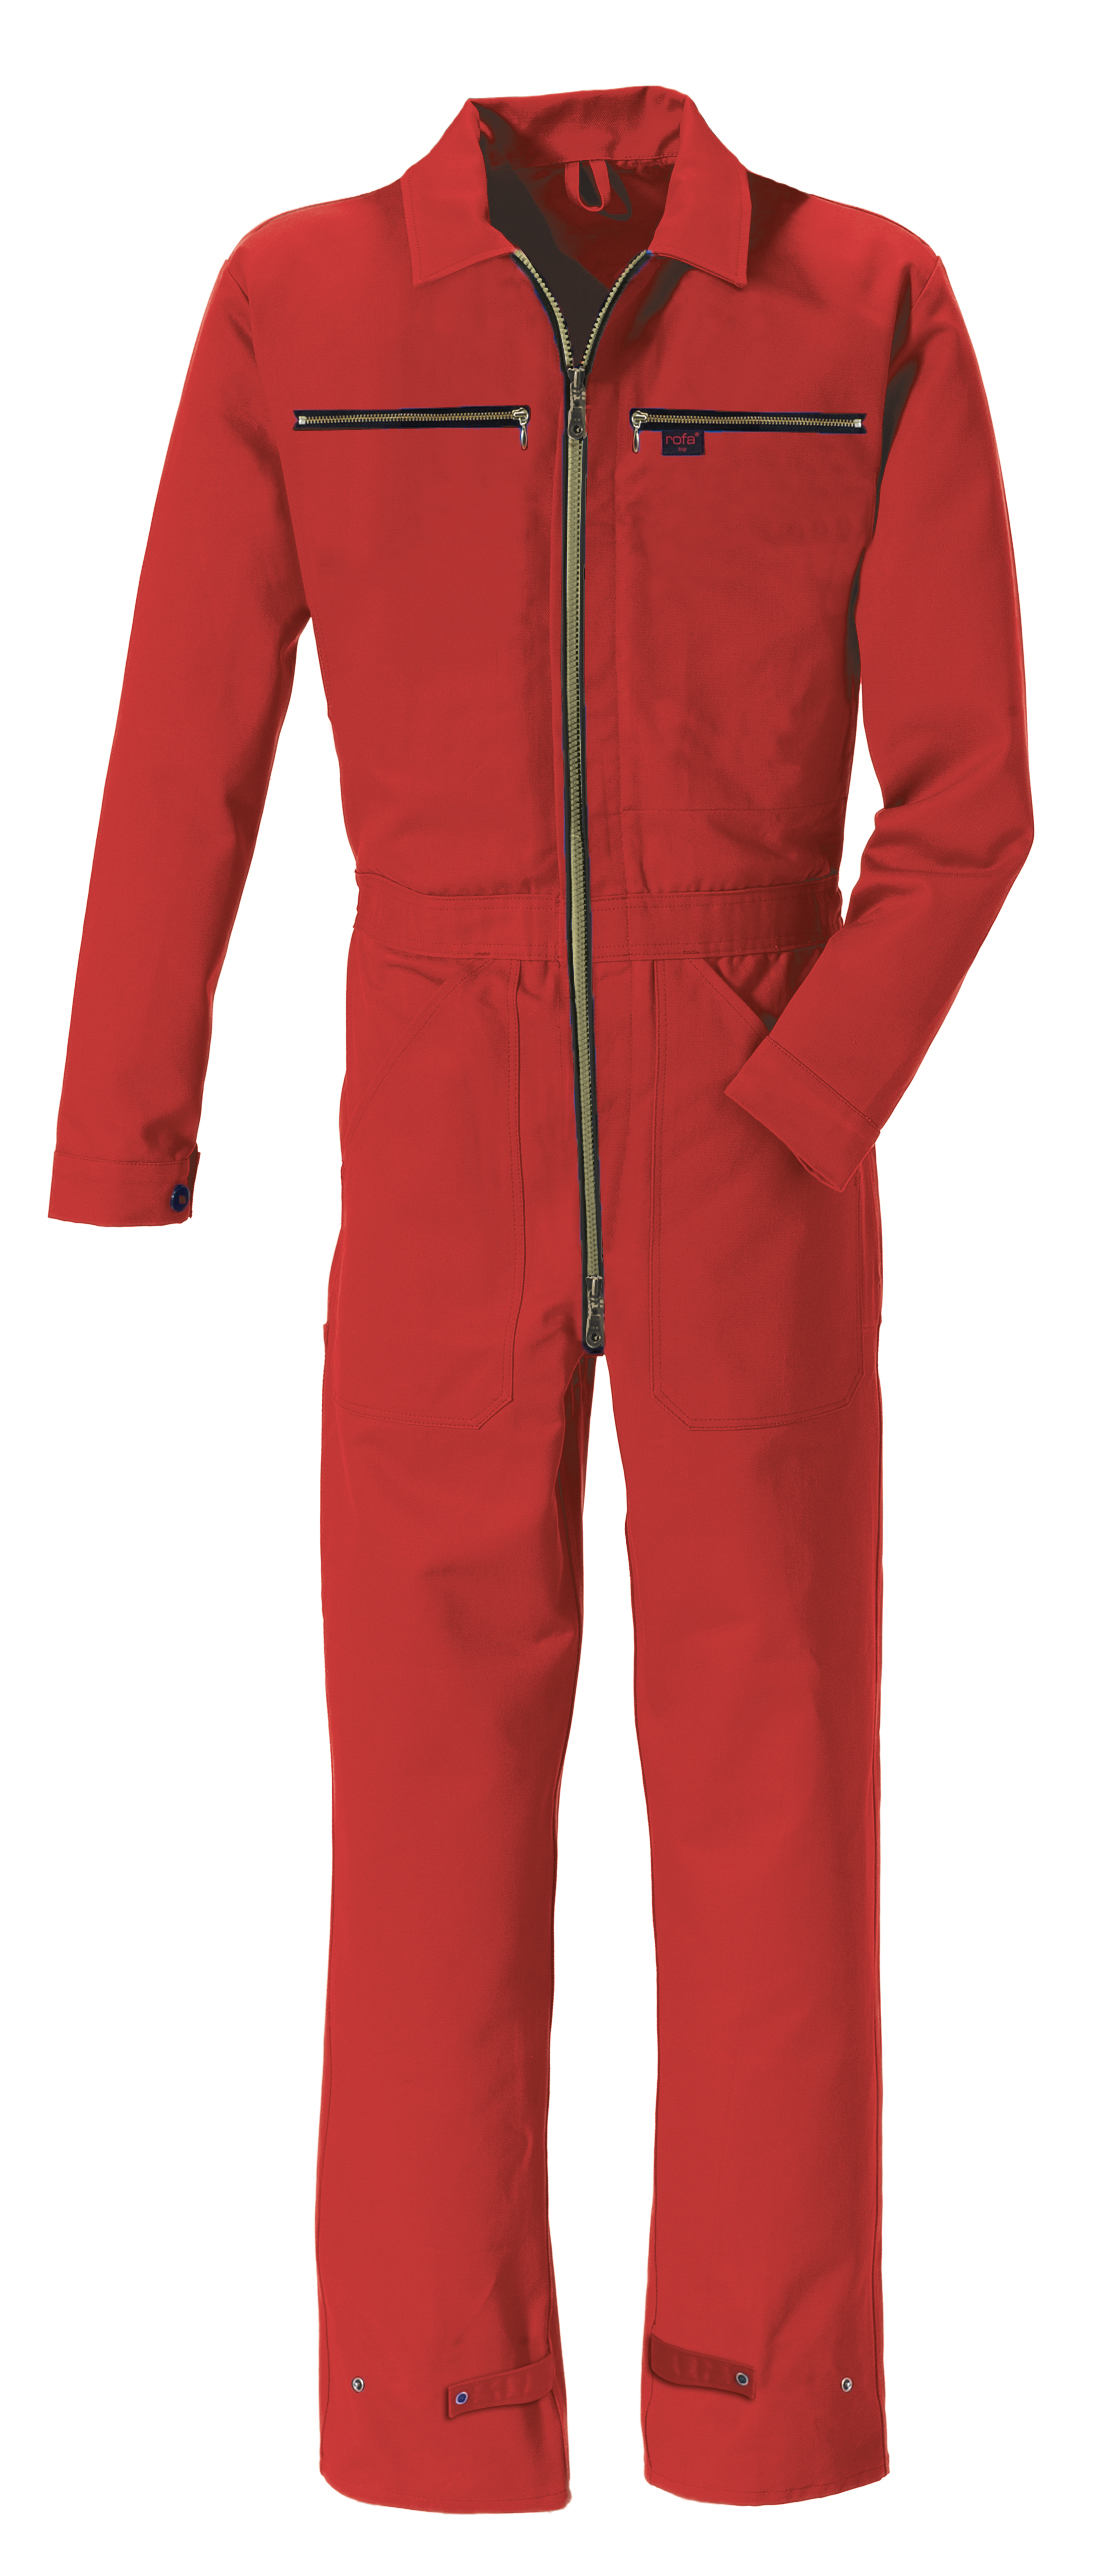 ROFA-Workwear, Arbeits-Berufs-Overall, Rallye-Kombi, ca. 275 g/m², rot